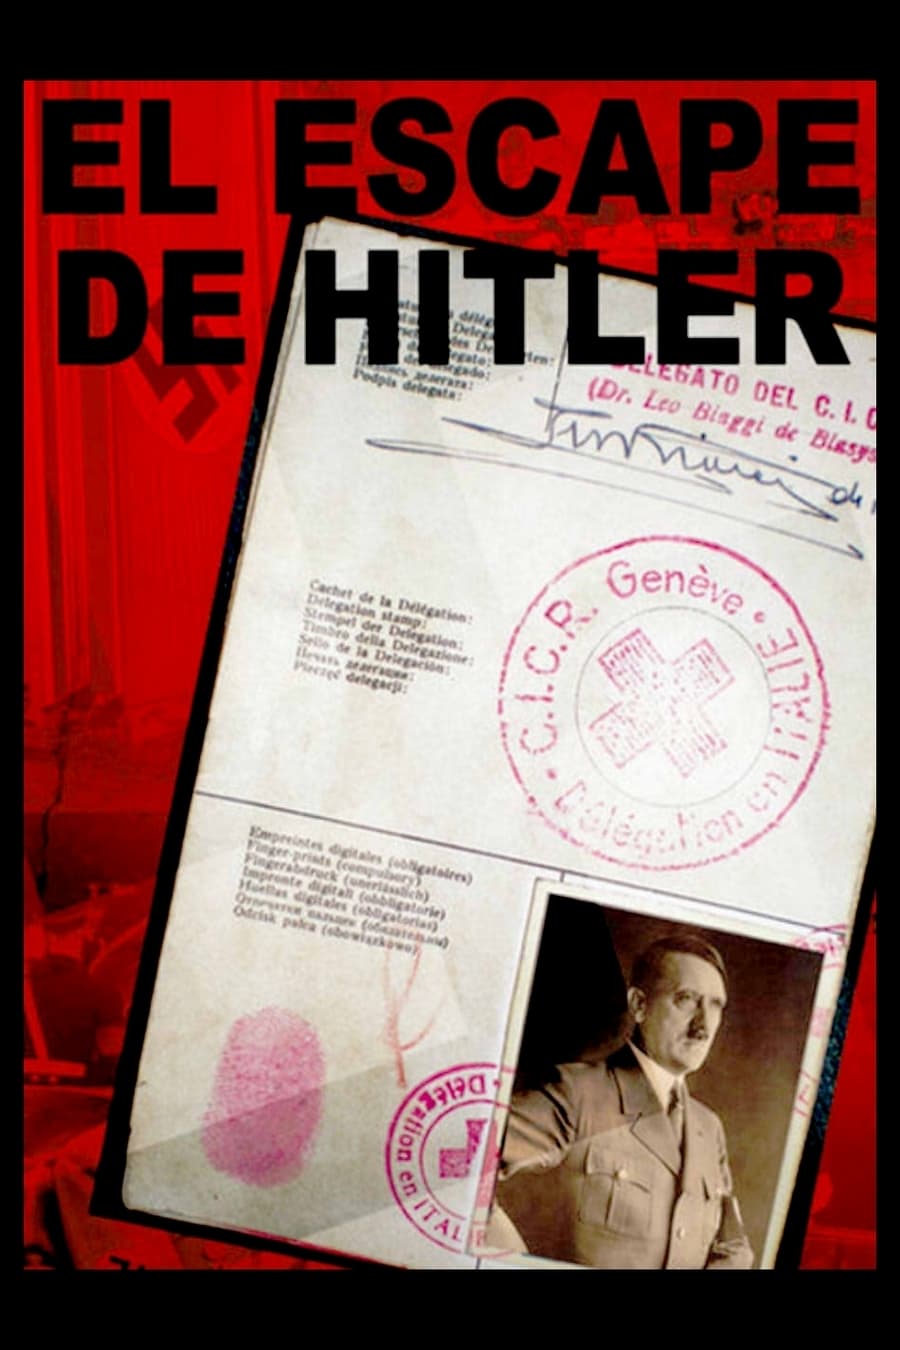 Hitler’s Escape